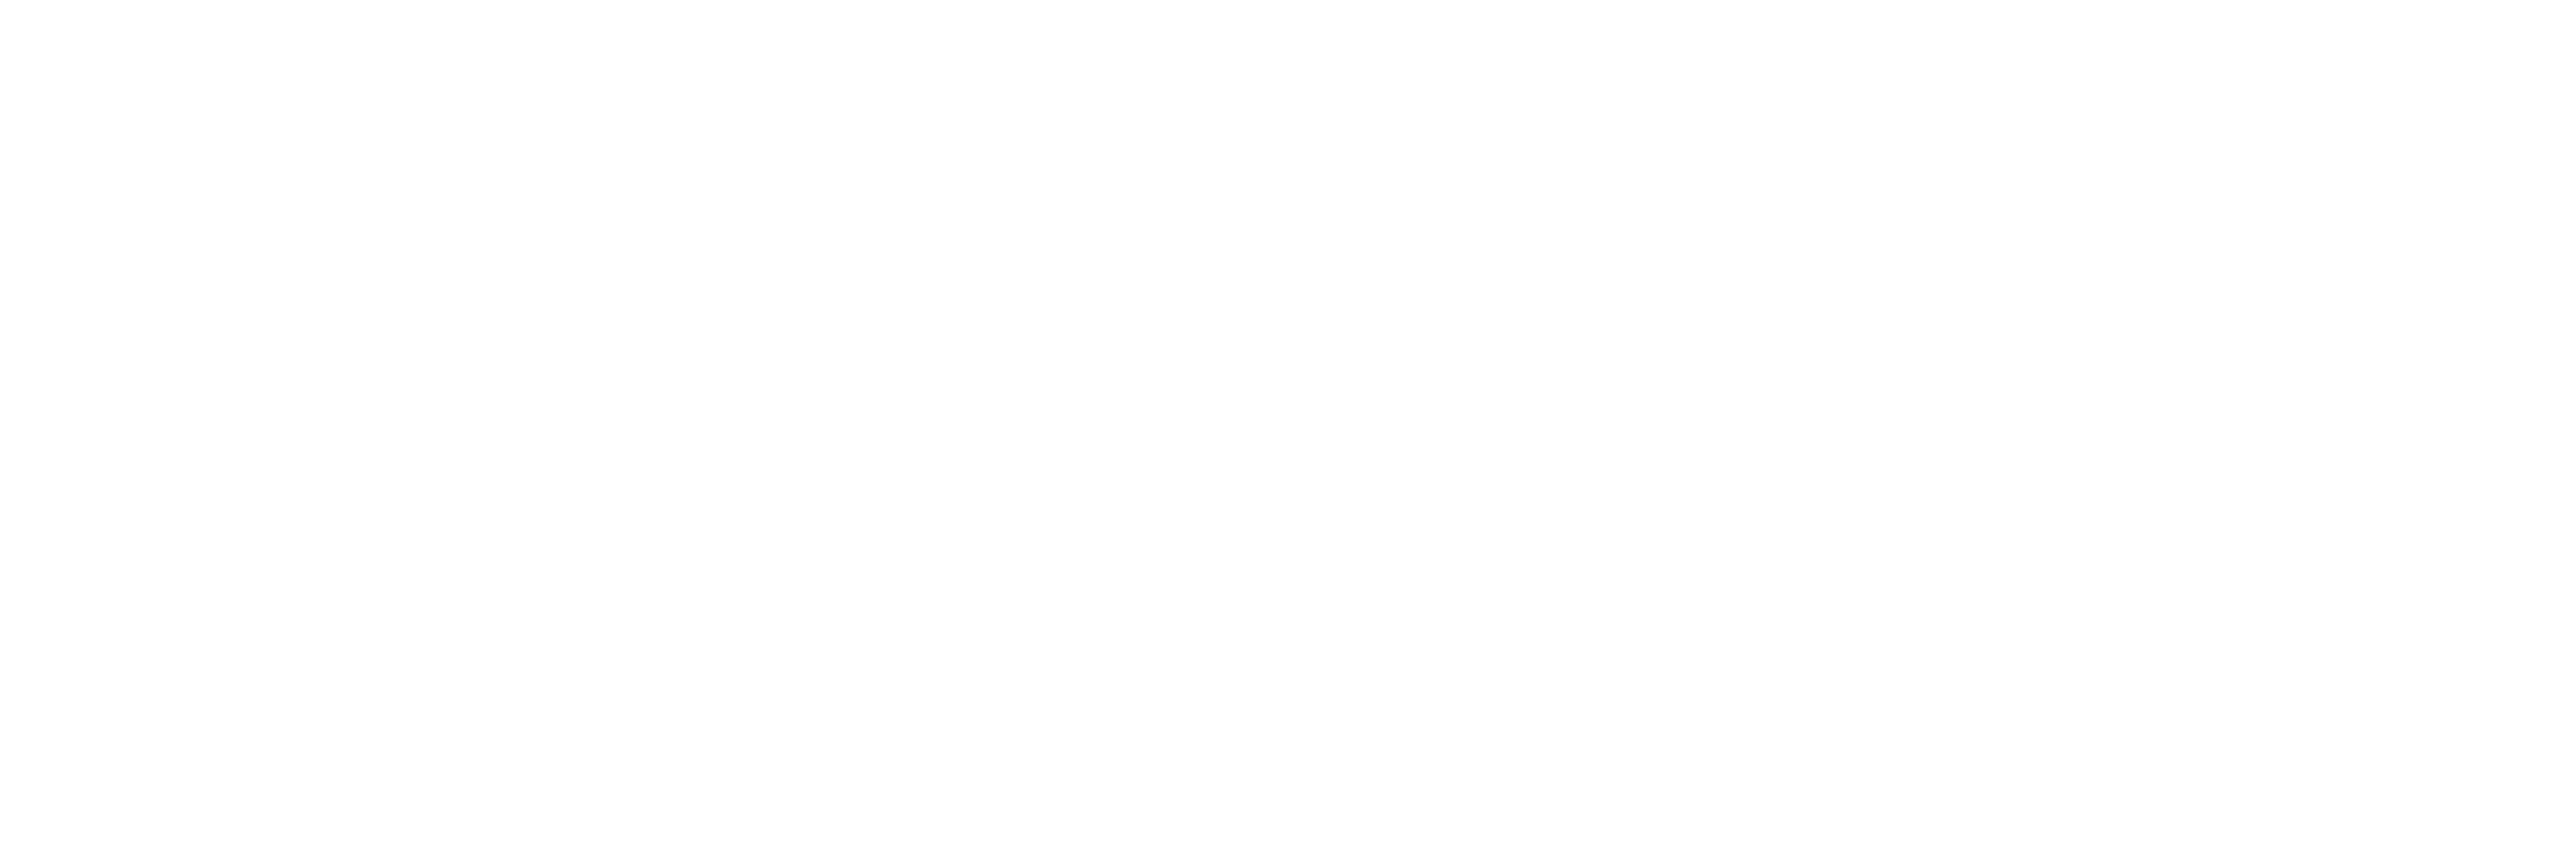 日本テニス協会ロゴ